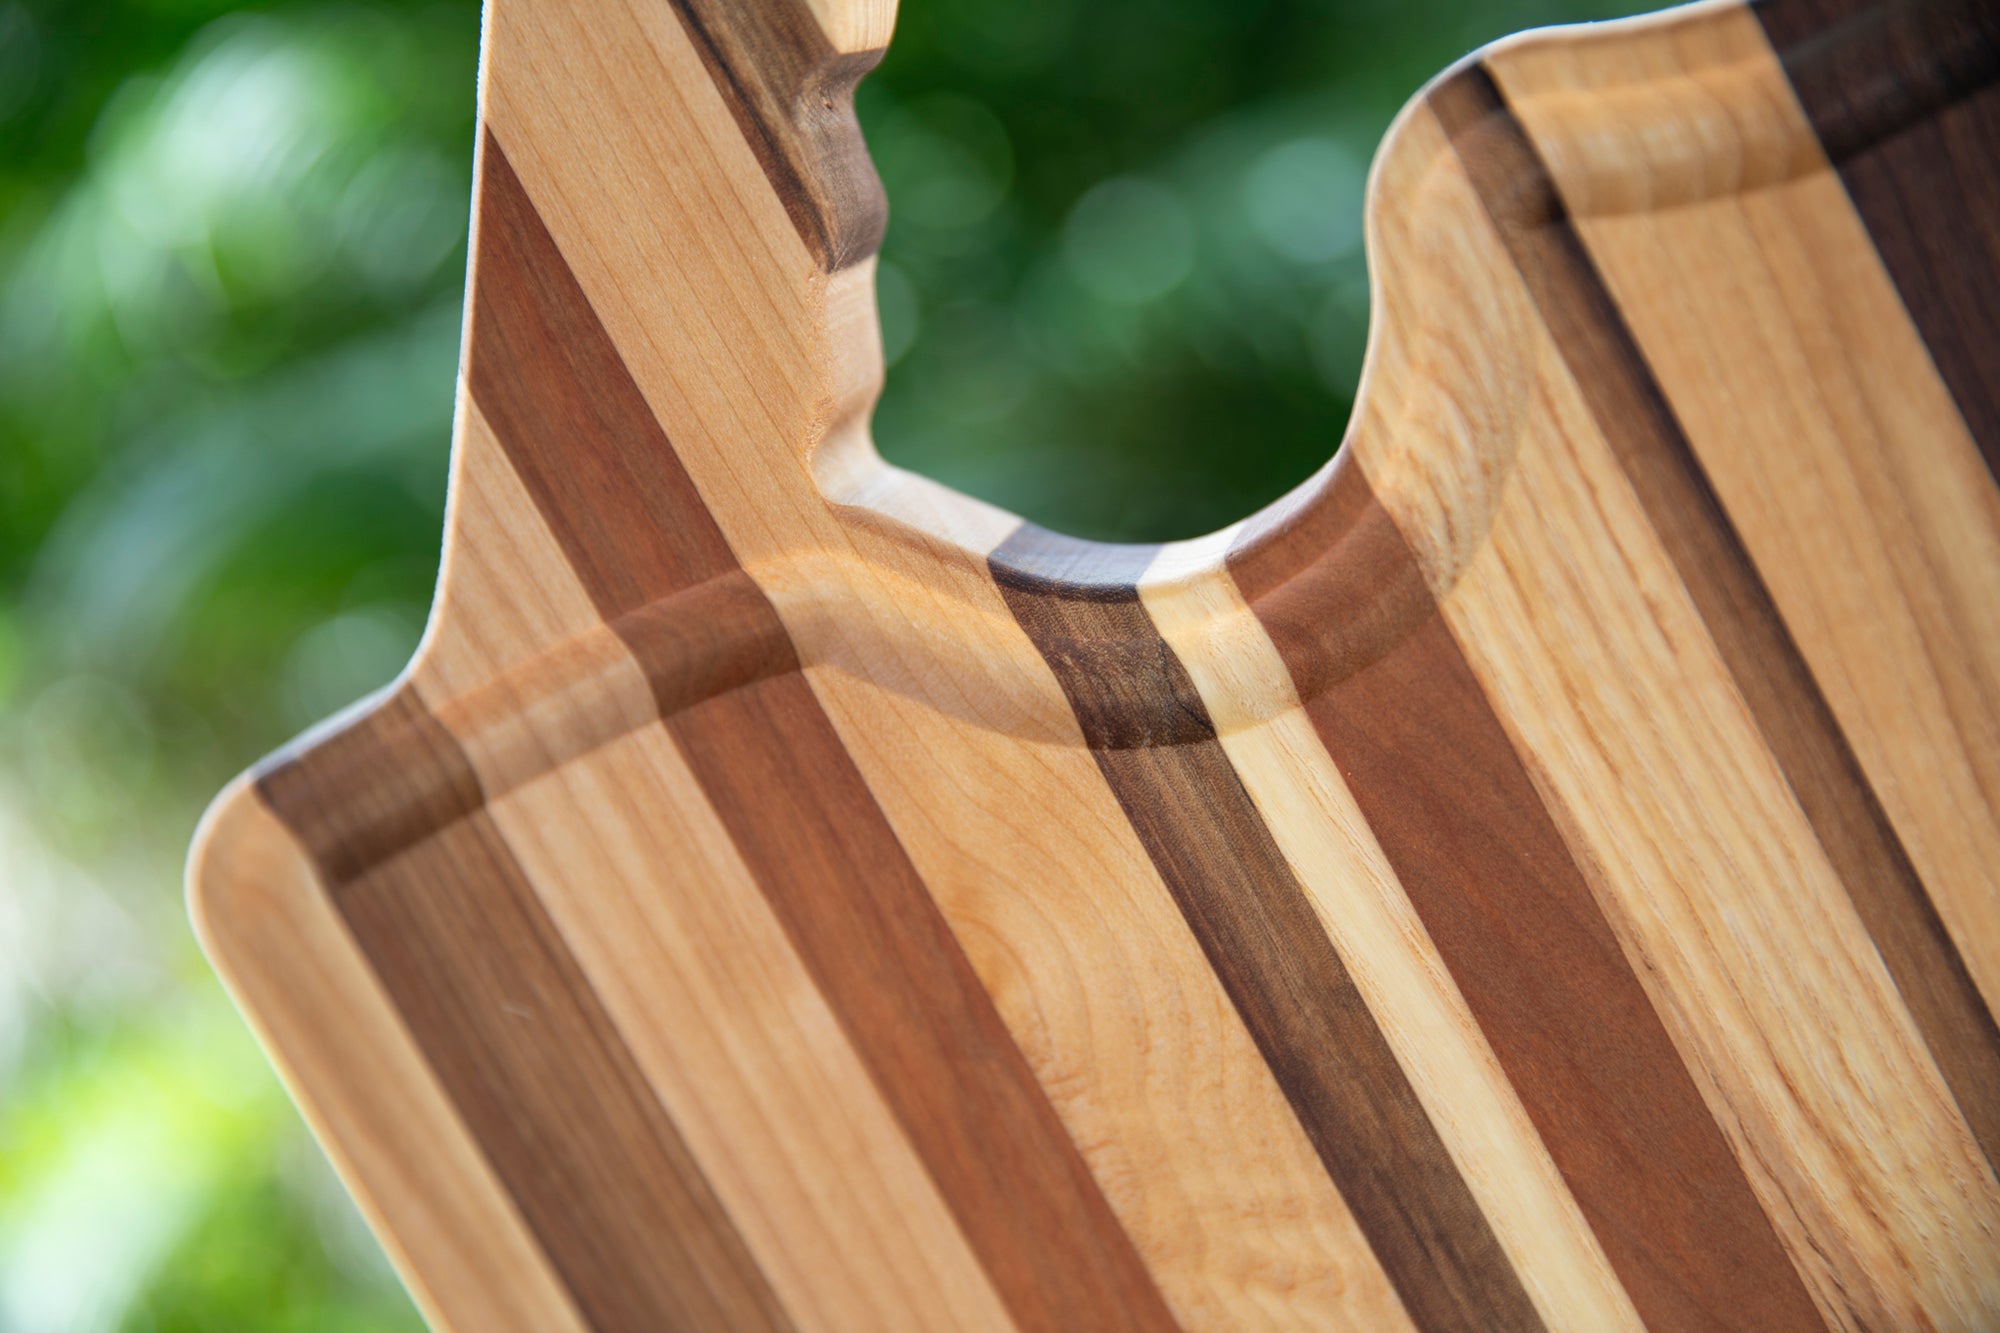 Hardwood Cutting Board (17"x10")